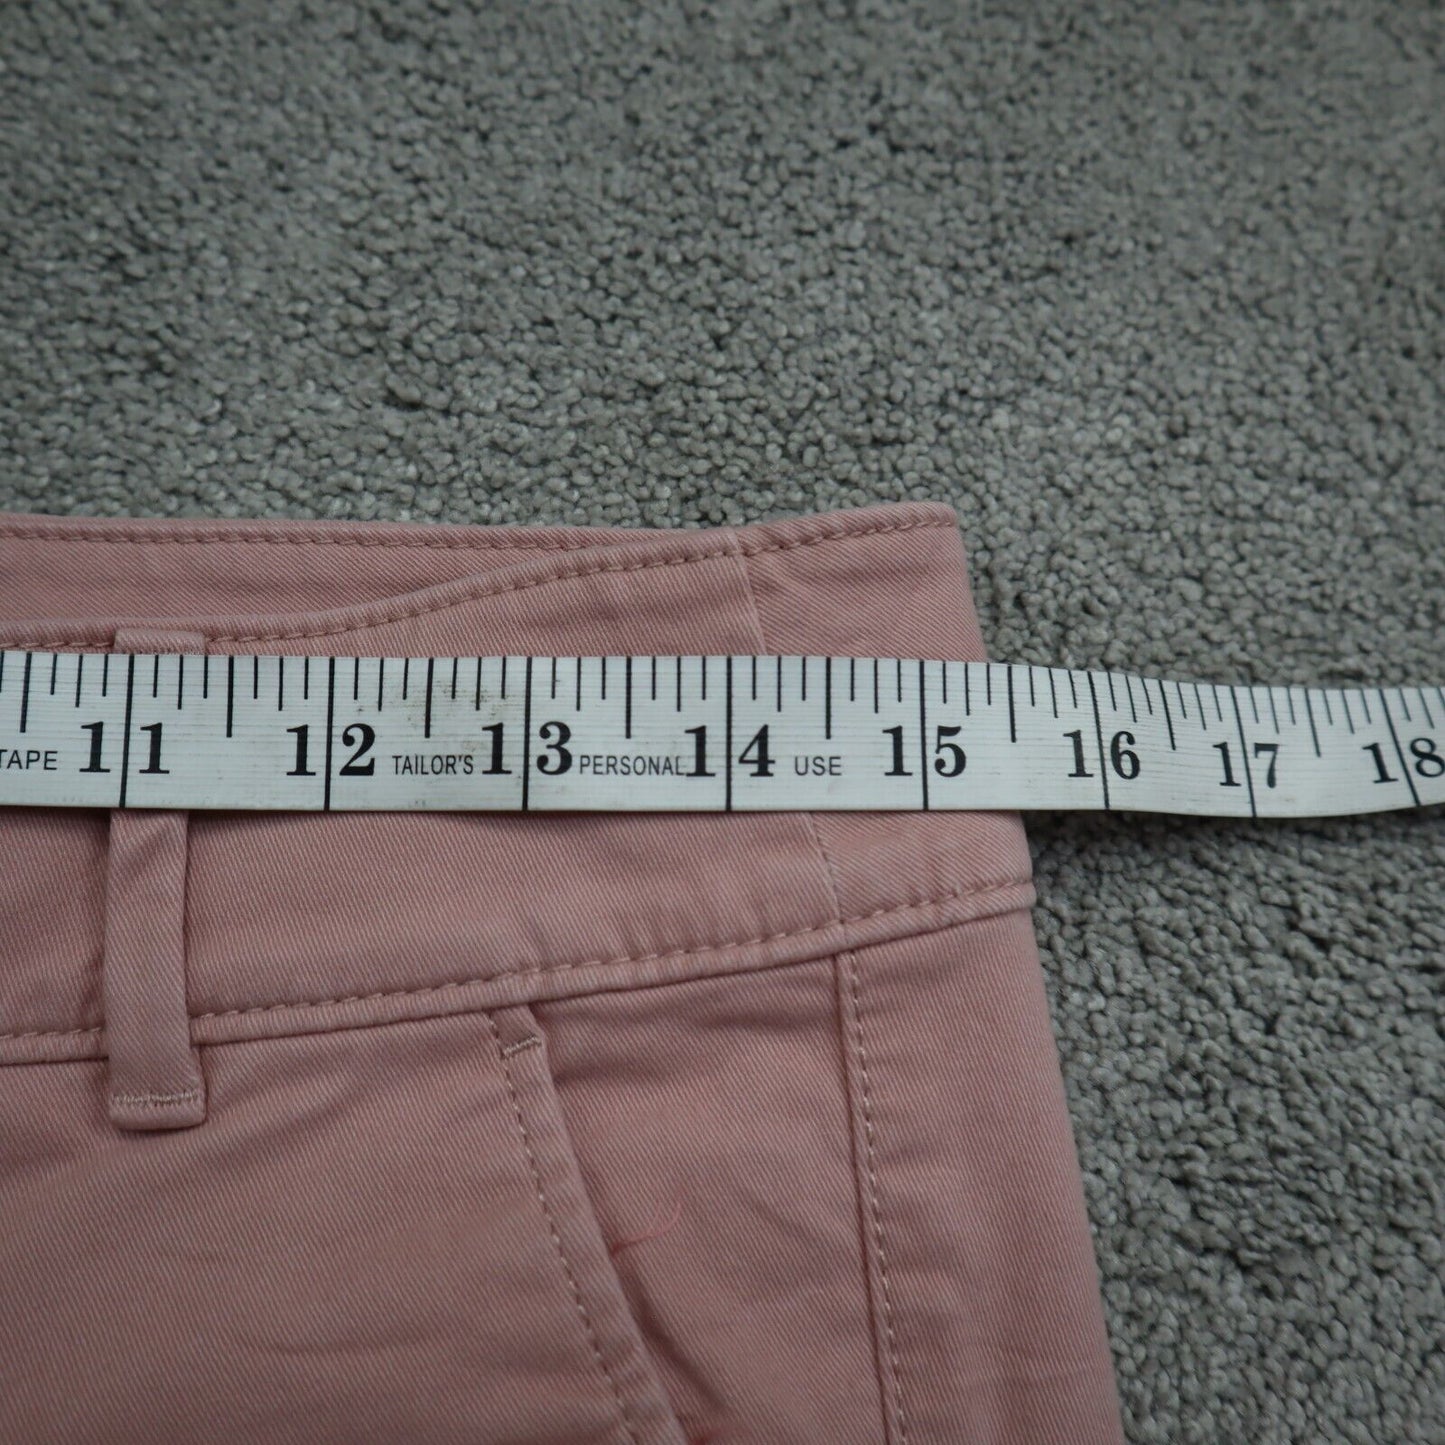 Loft Womens Chino Shorts 100% Cotton Mid Rise Stretch Salish Pockets Pink Size 0